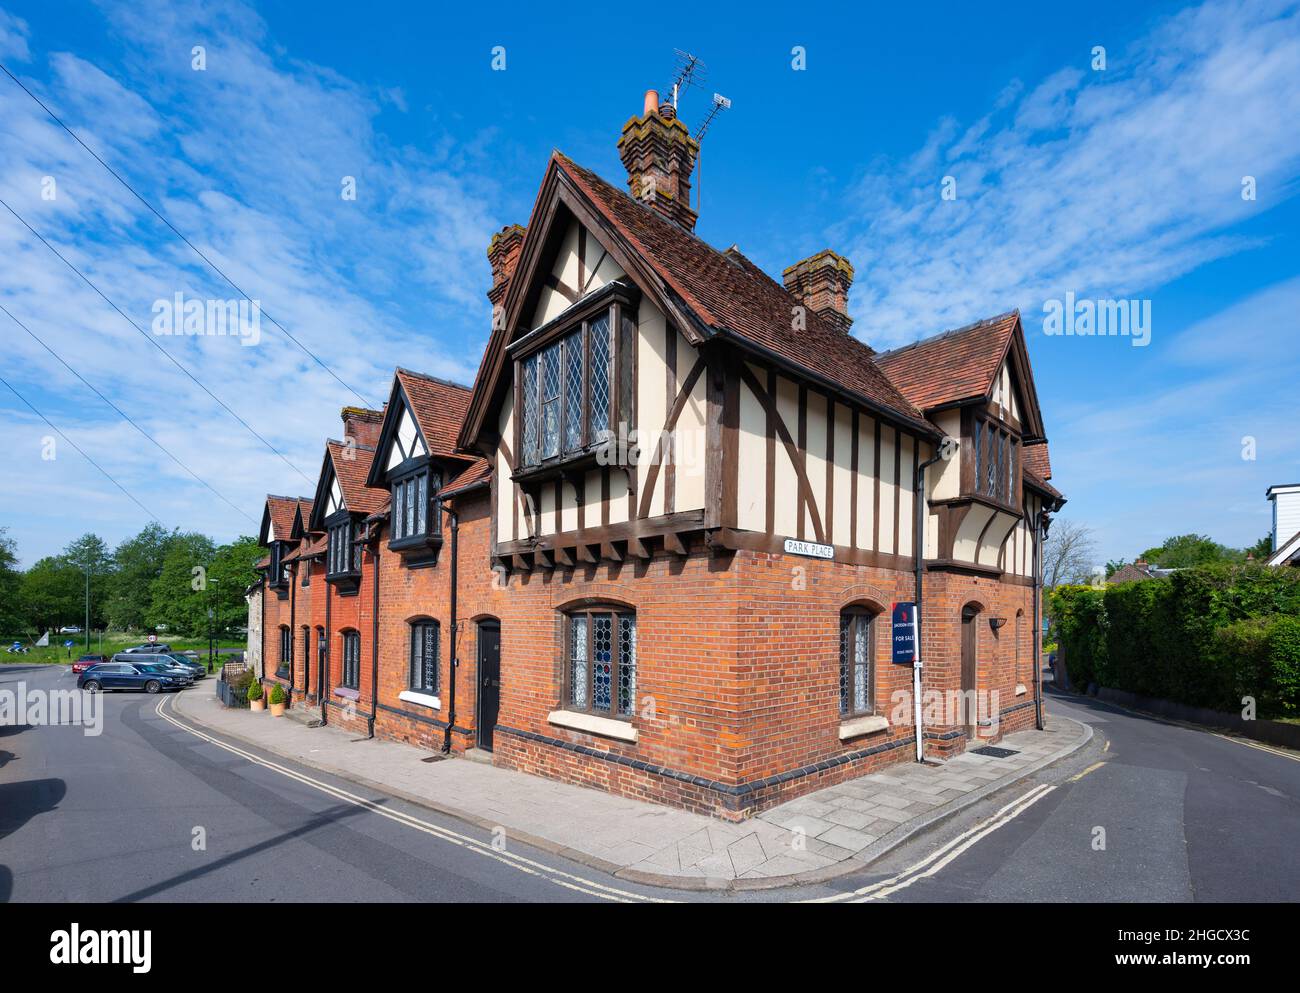 Gran casa de estilo Tudor o terraza de vivienda en Arundel, West Sussex, Inglaterra, Reino Unido. Foto de stock